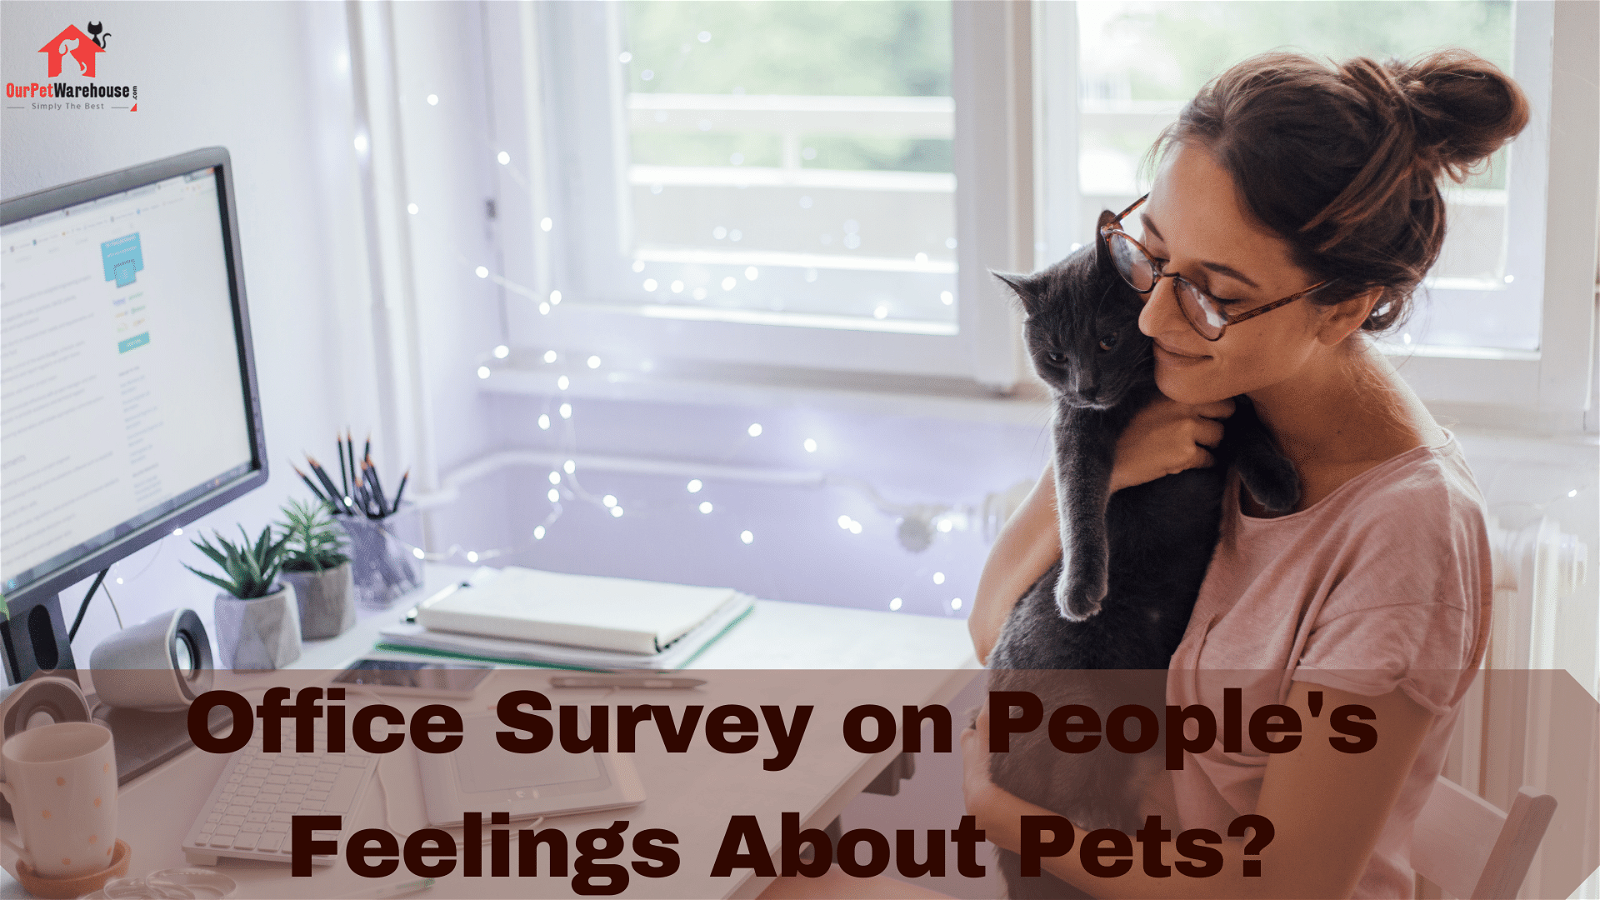 Pet Survey Infographic 2020